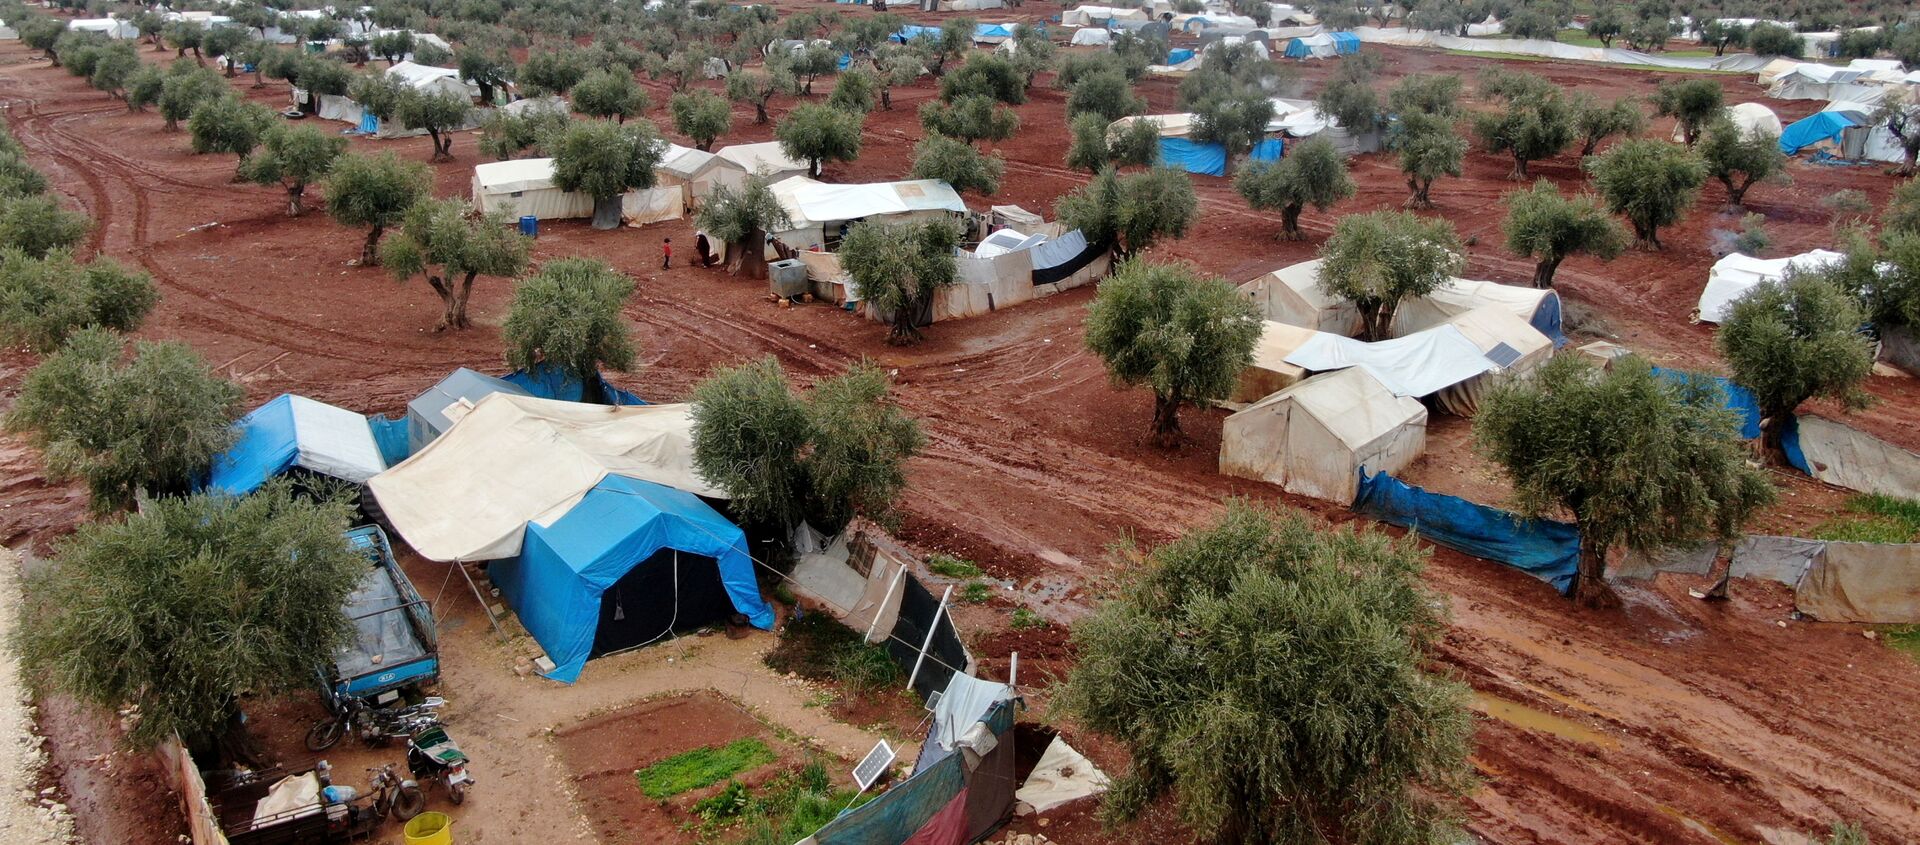 Сирия - гуманитарный лагерь для беженцев из зоны боевых действий - Sputnik Грузия, 1920, 01.03.2021